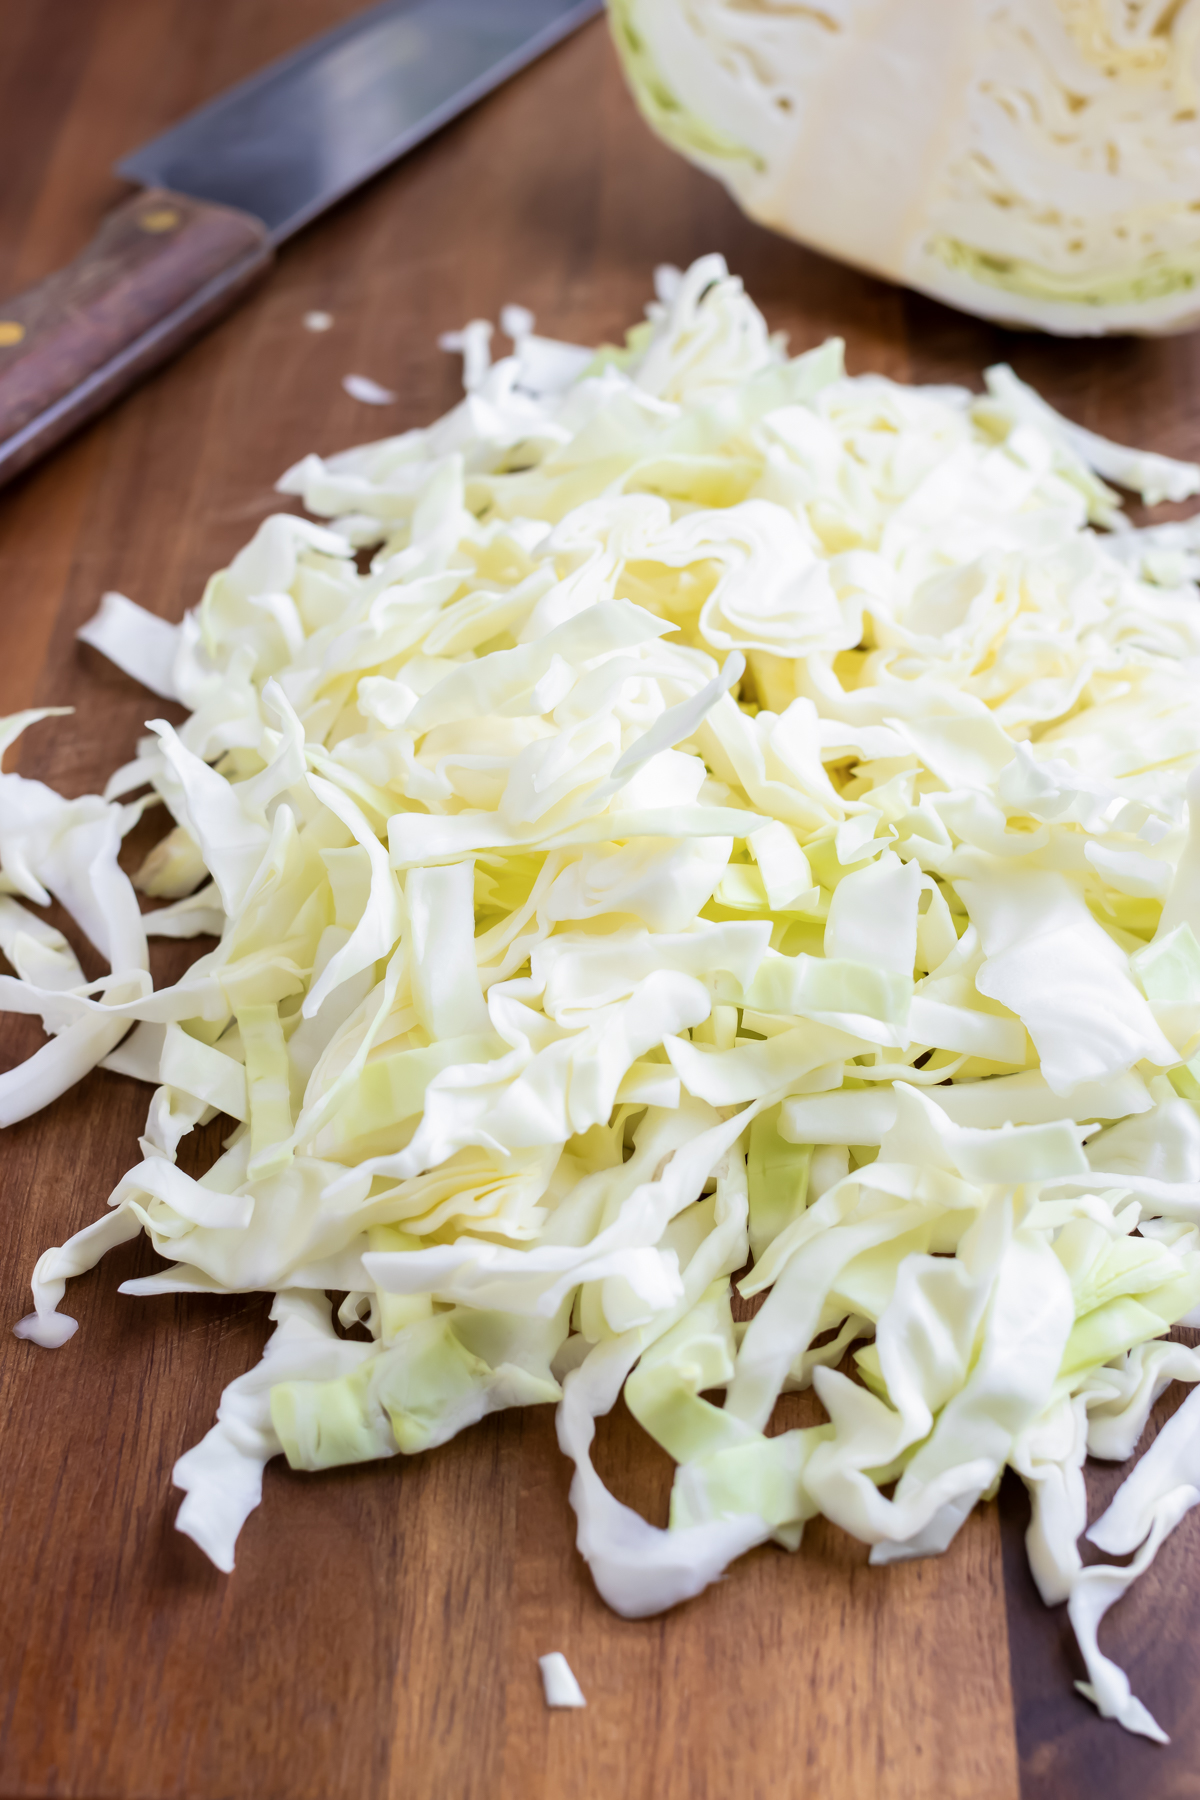 Fully shredded cabbage on a cutting board.